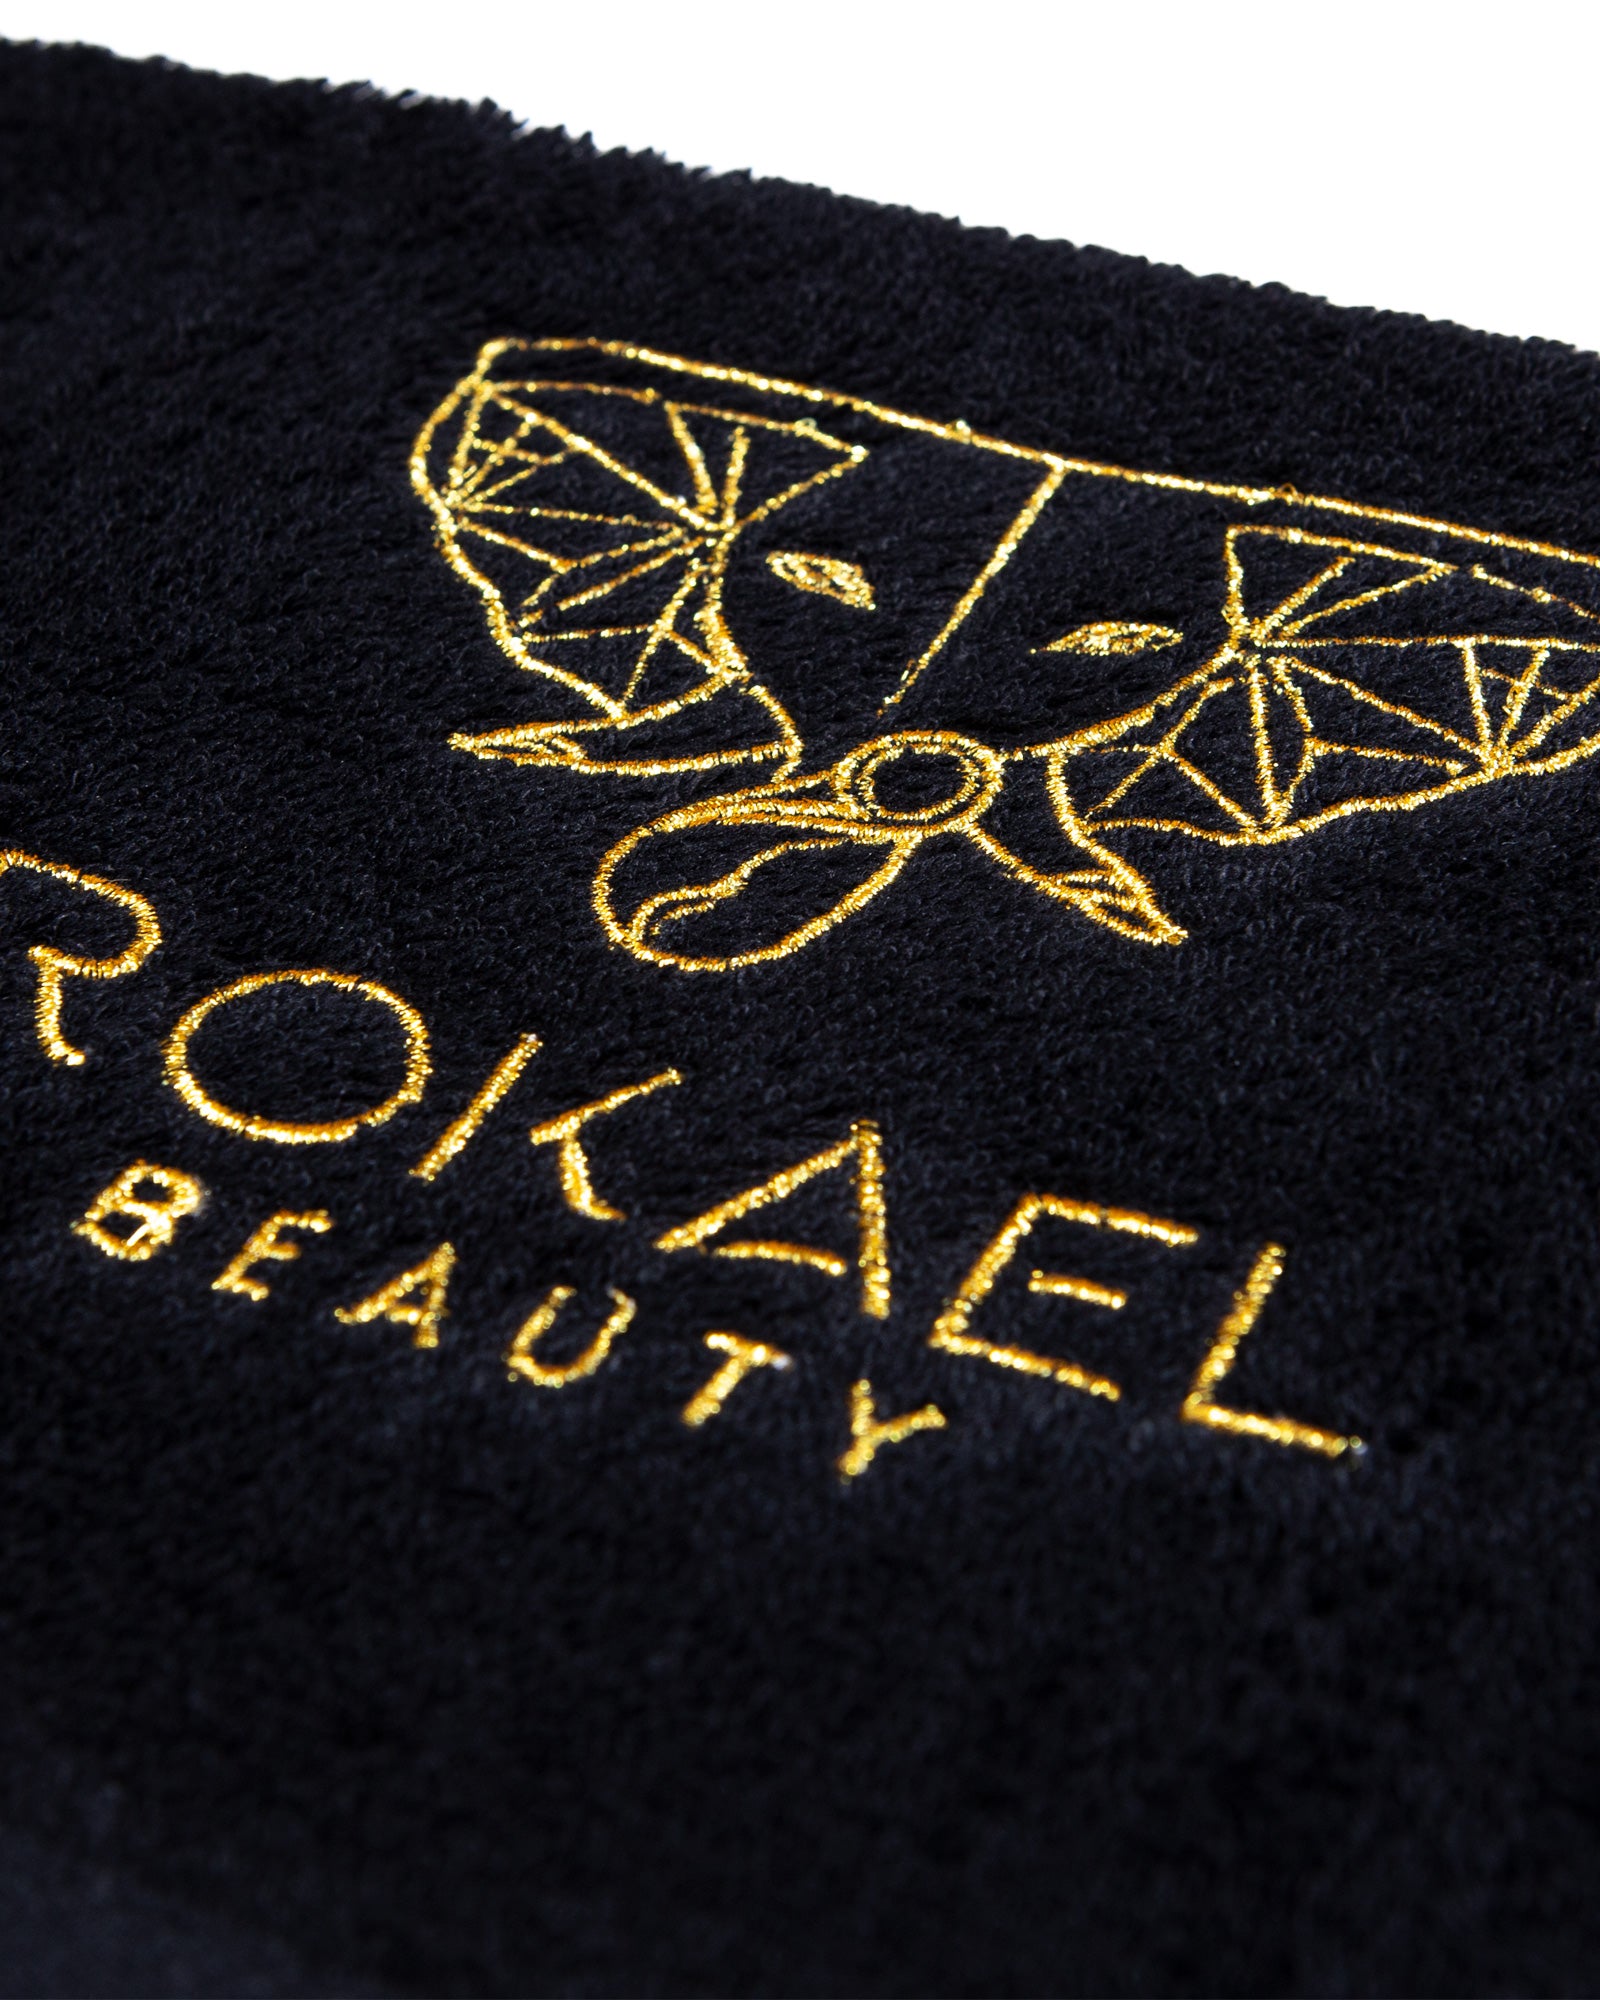 Rokael Beauty Face Towel